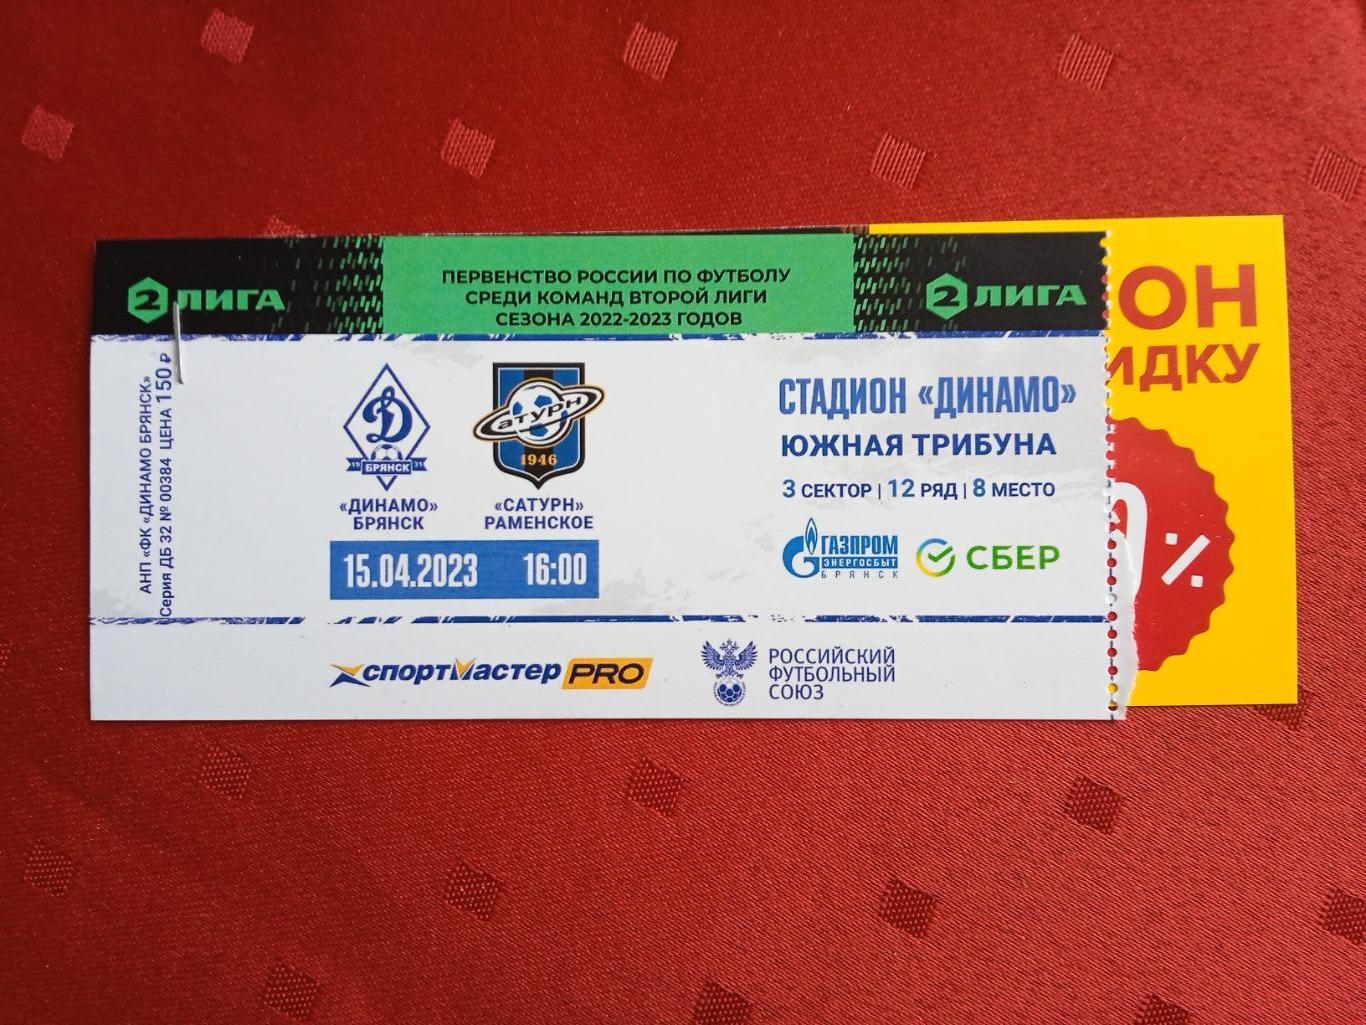 Билет на матч Динамо Брянск - Сатурн Раменское15.04.2023.